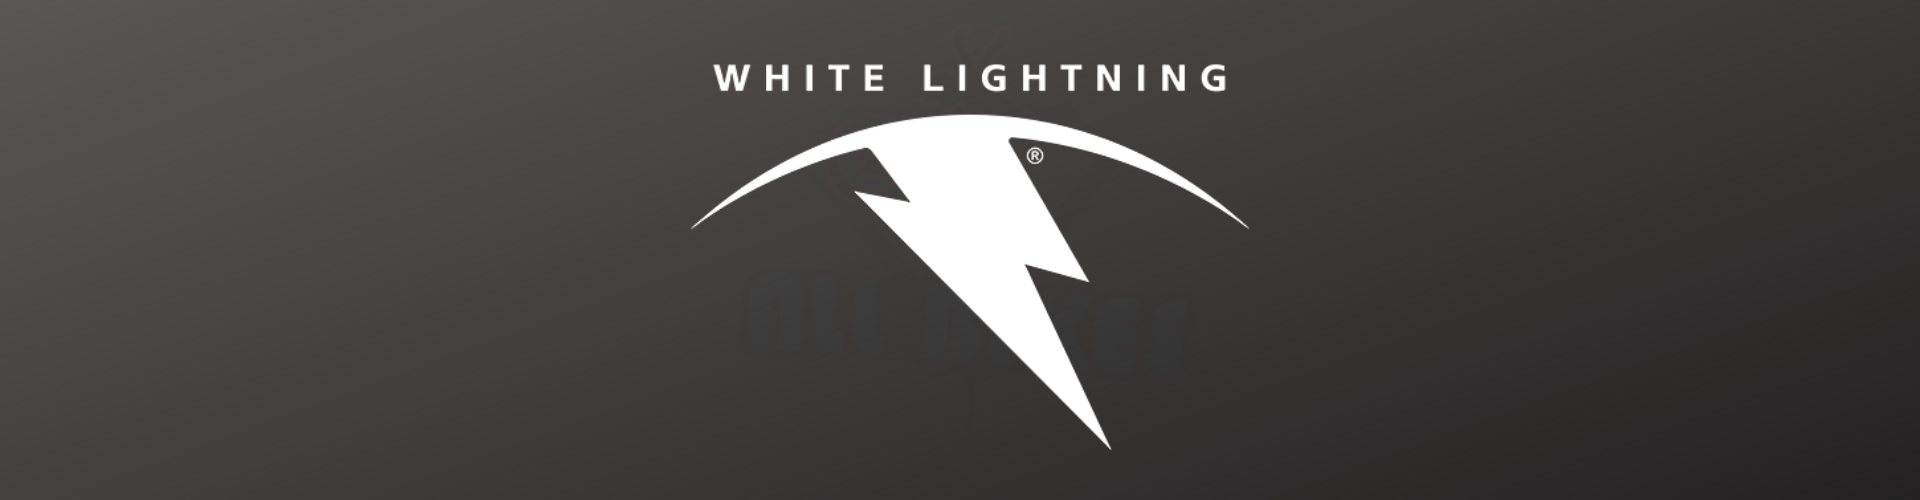 White Lightning Brand Category